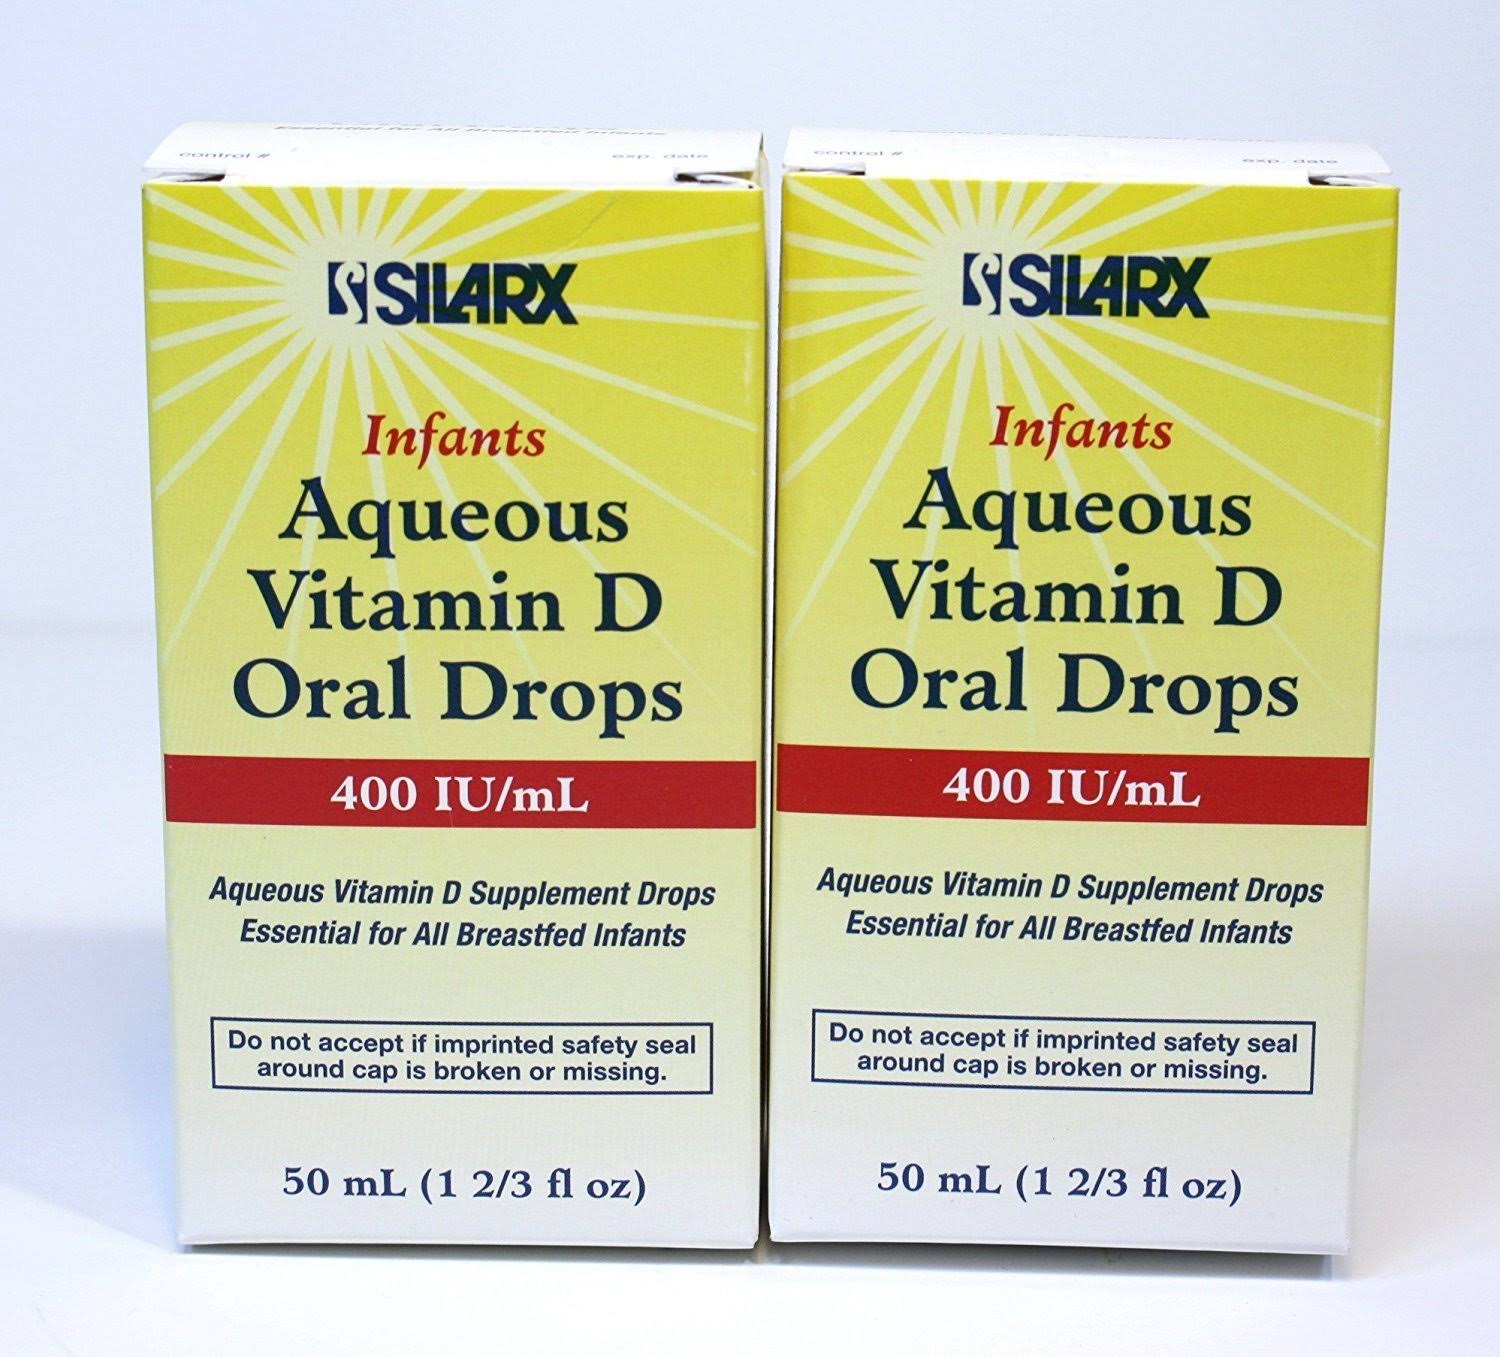 Silarx Infants Aqueous Vitamin D Oral Drops, 400 IU, 50 ml (Pack of 1)